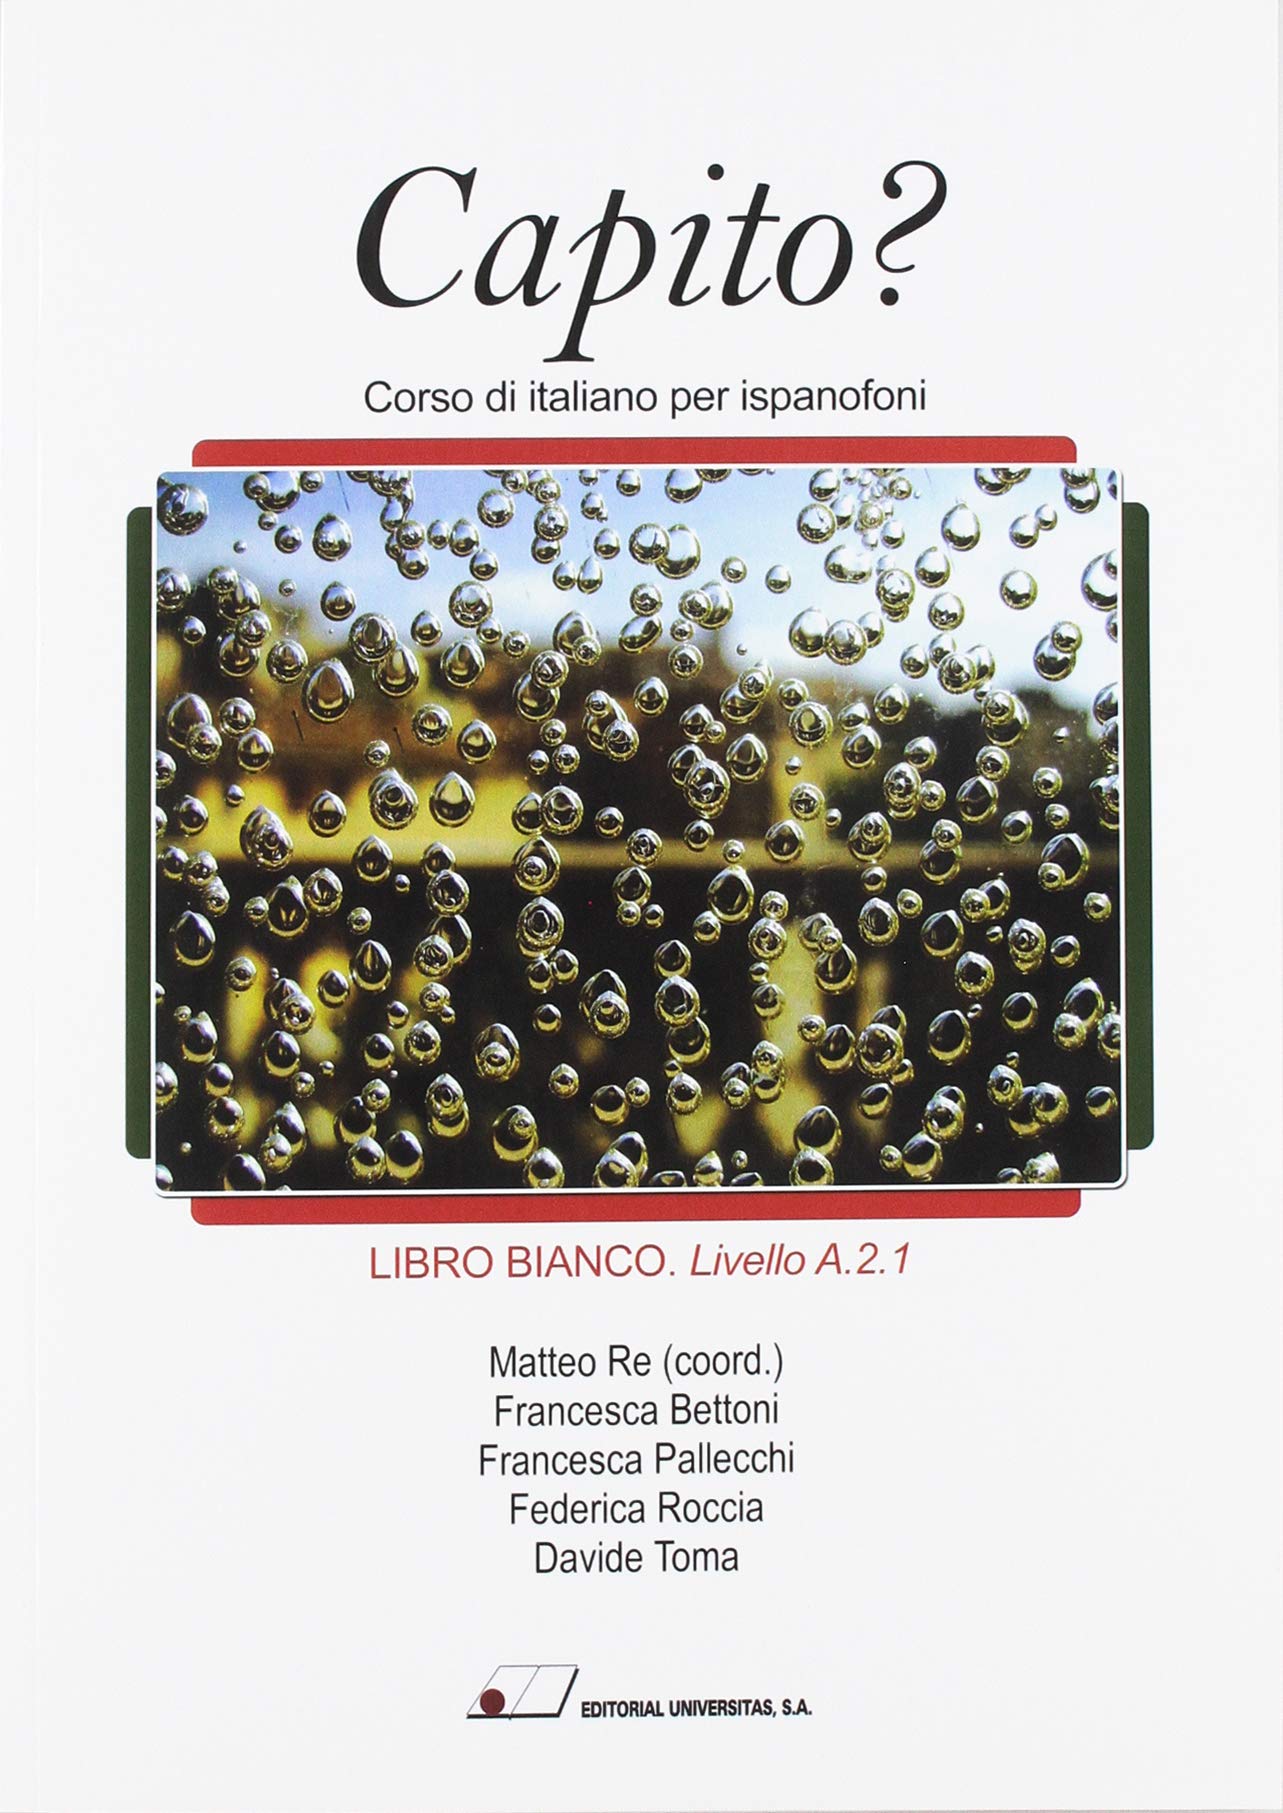 CAPITO LIBRO BIANCO LIVELLO A.2.1